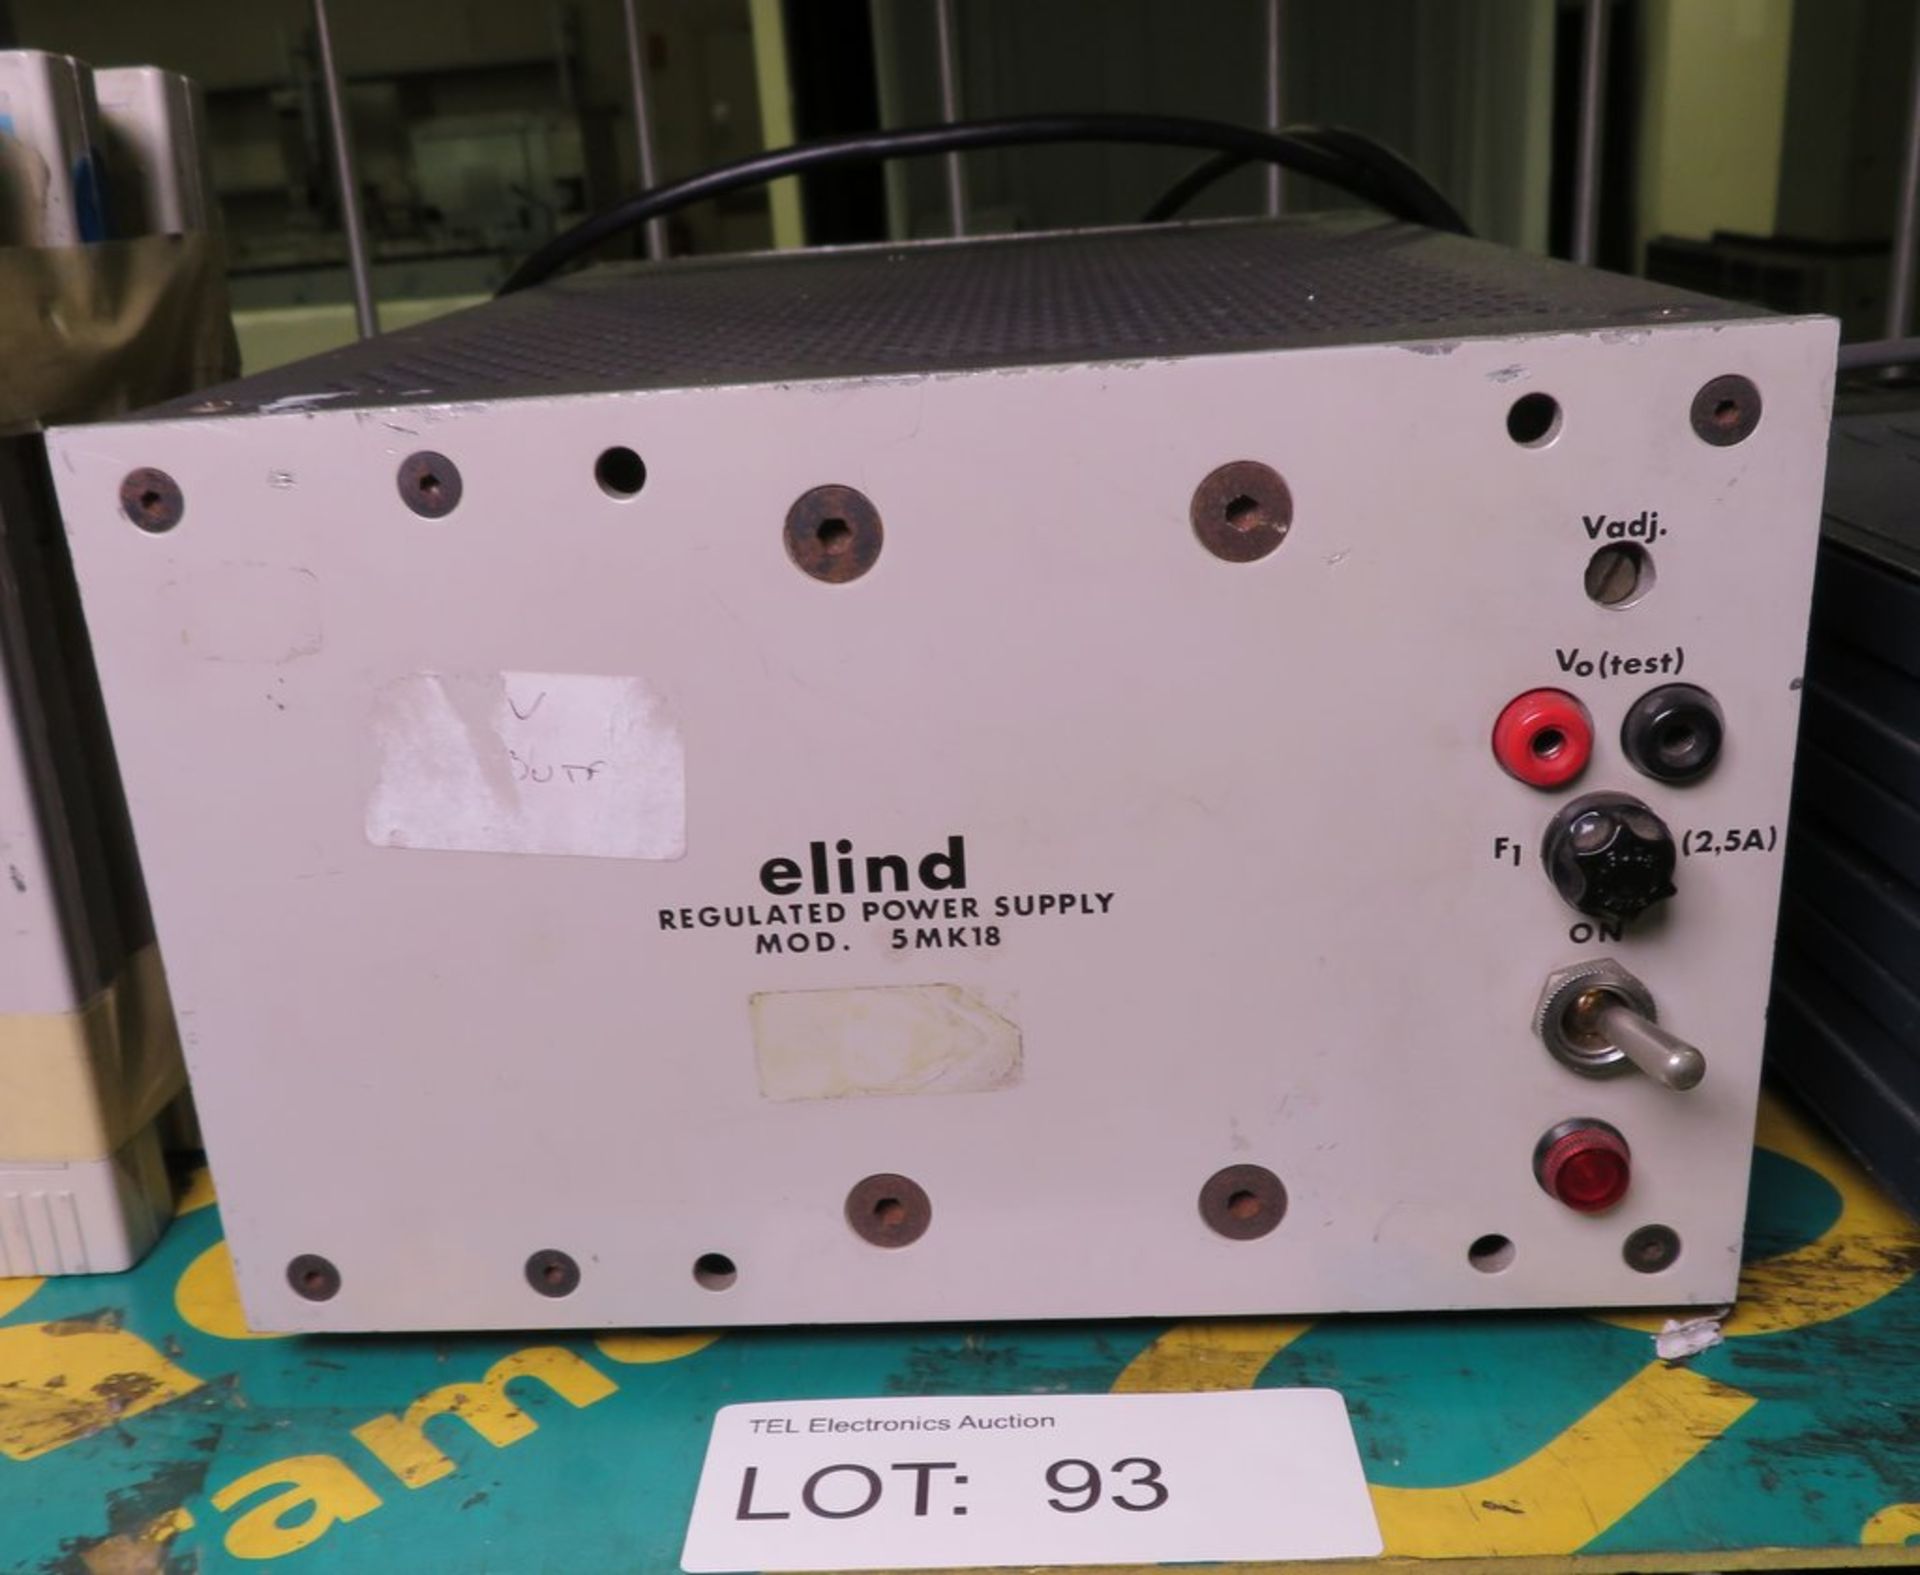 Elind Regulated Power Supply model - 5MK18